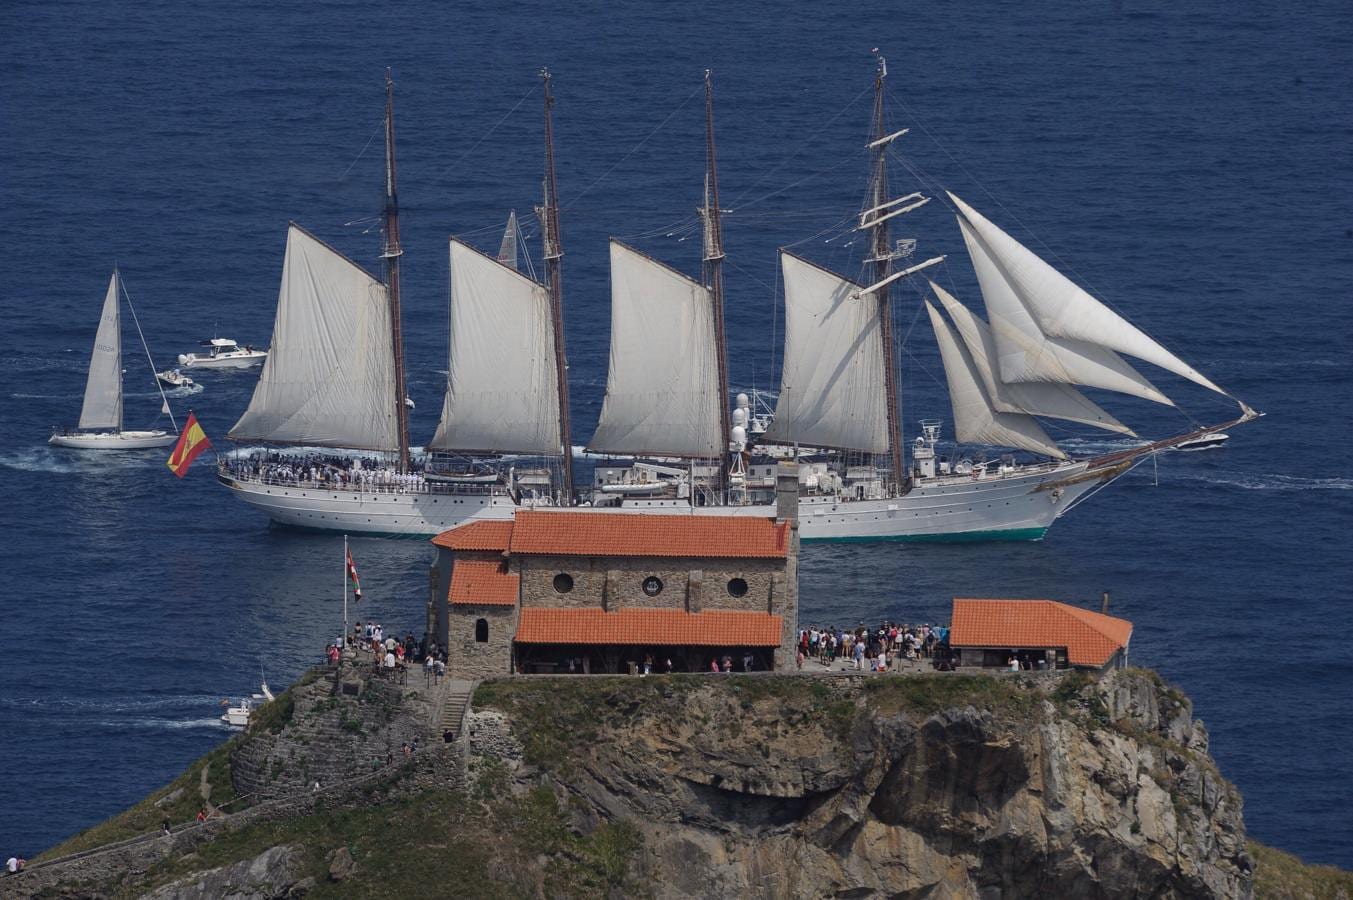 San Juan de Gaztelugatxe. Al paso de los barcos por San Juan de Gaztelugatxe, los navegantes rindieron homenaje a Elcano y a las expediciones vascas de aquella época.